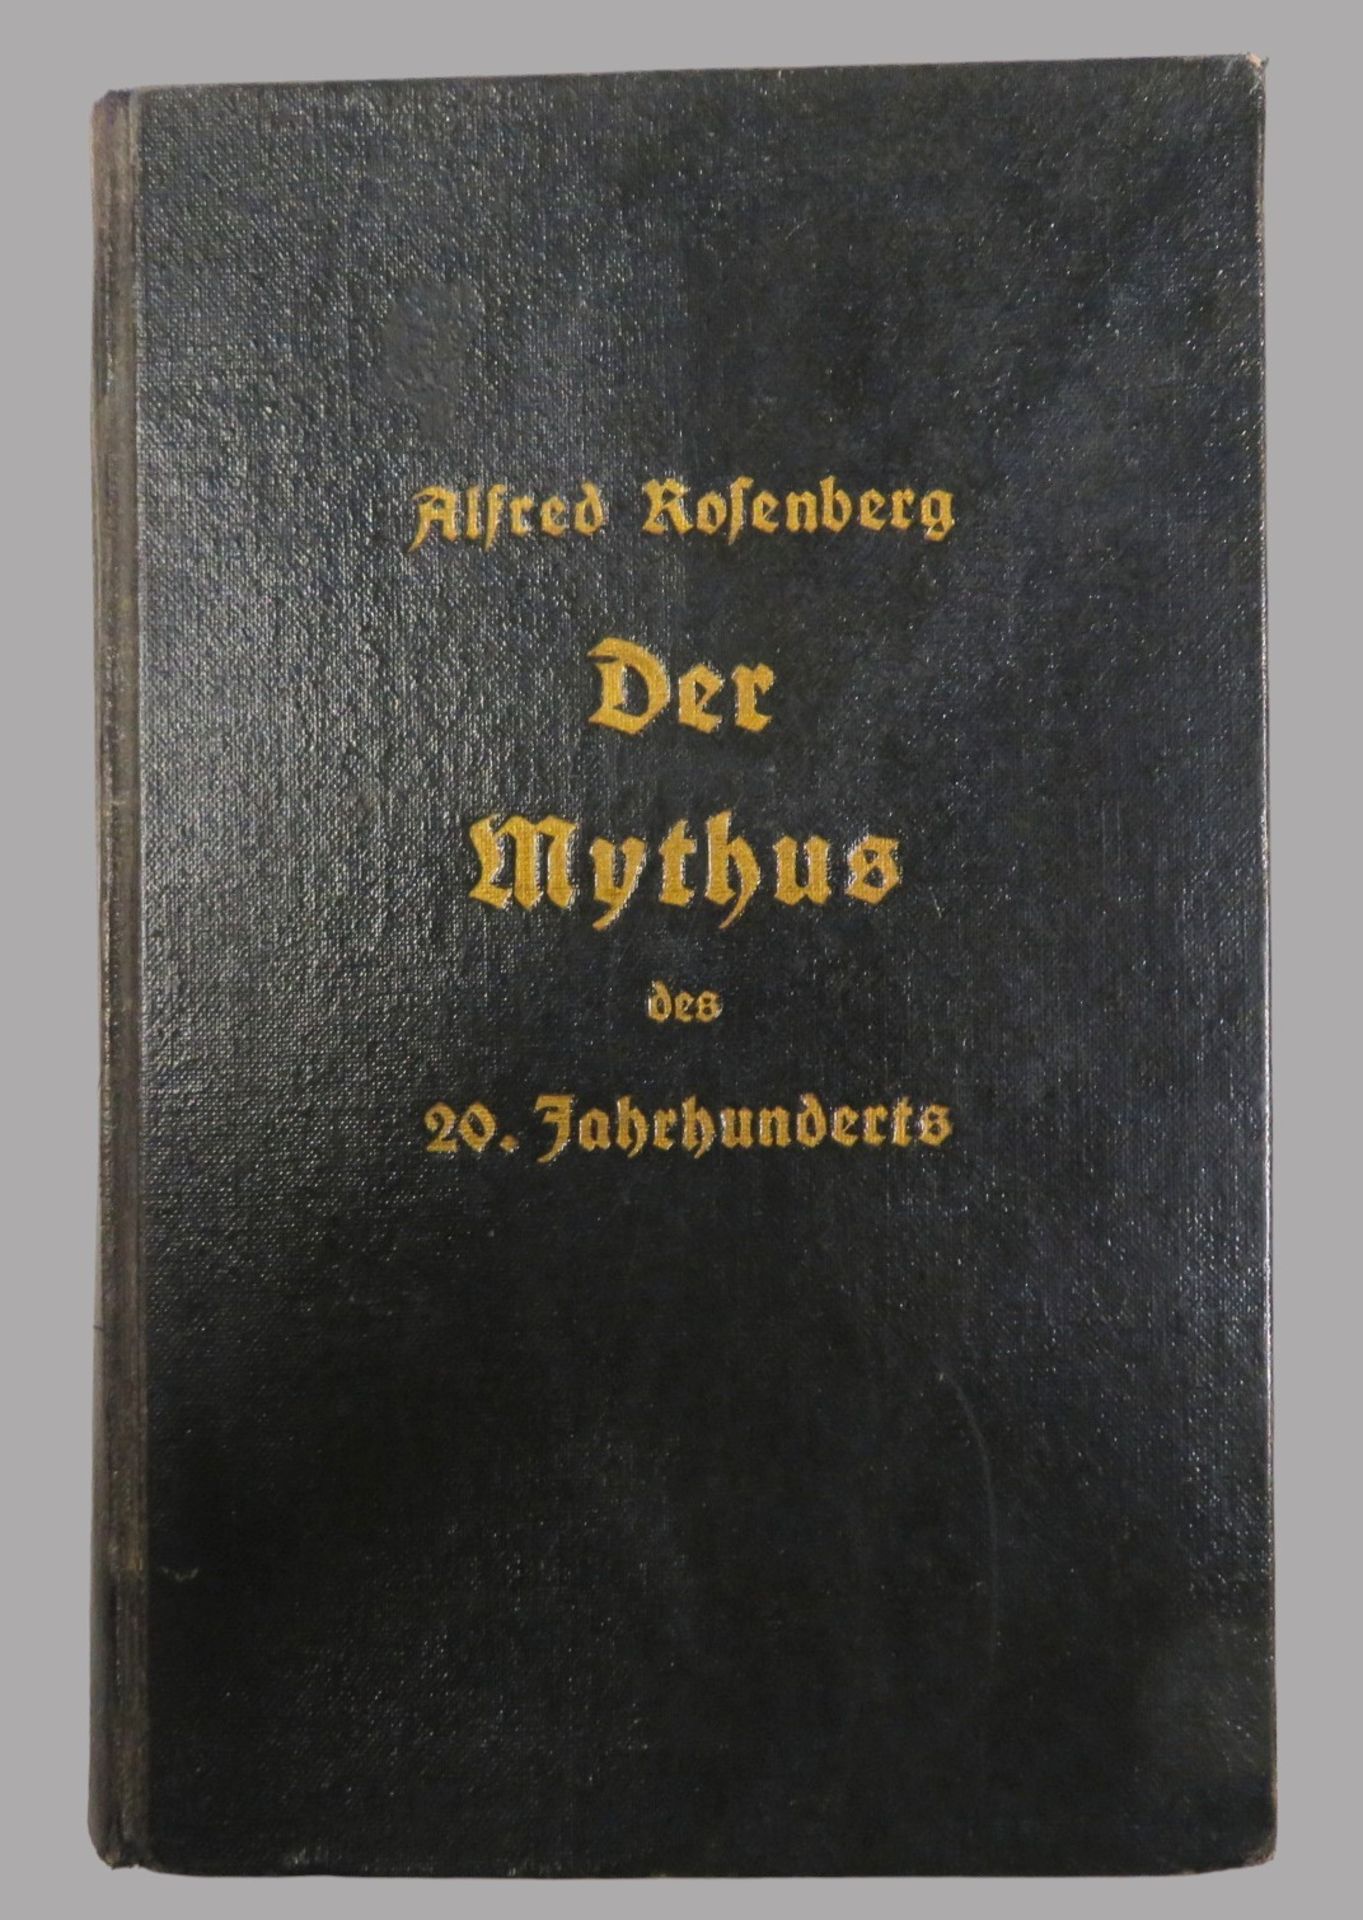 Bd., Rosenberg, Alfred: Der Mythus des 20. Jahrhunderts. München 1934, versehen mit Stempel der "Vo